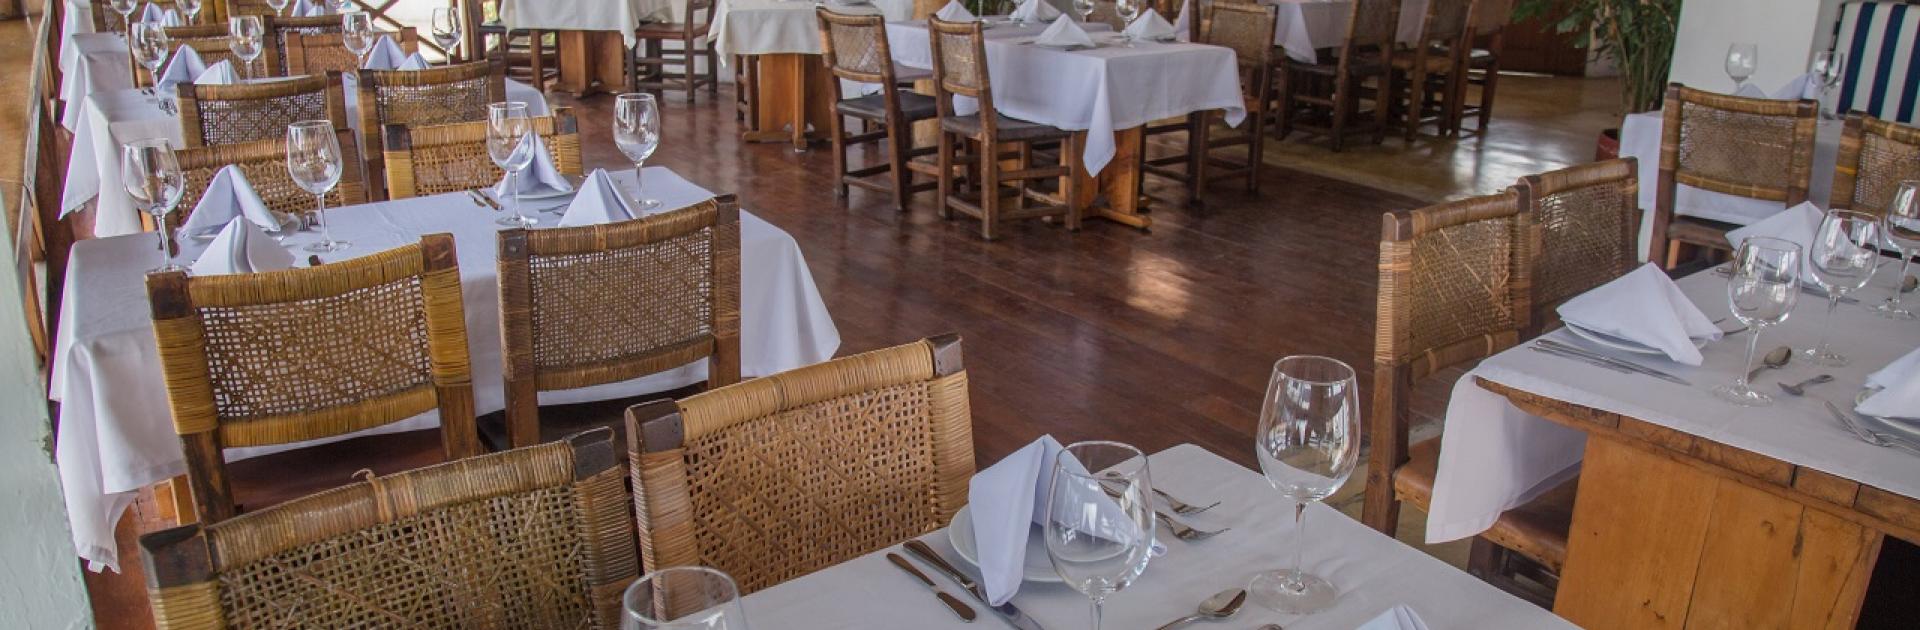 Restaurante Bar El Muelle del Chef, participante de Dónde Restaurant Week 2019 en Cartagena de Indias